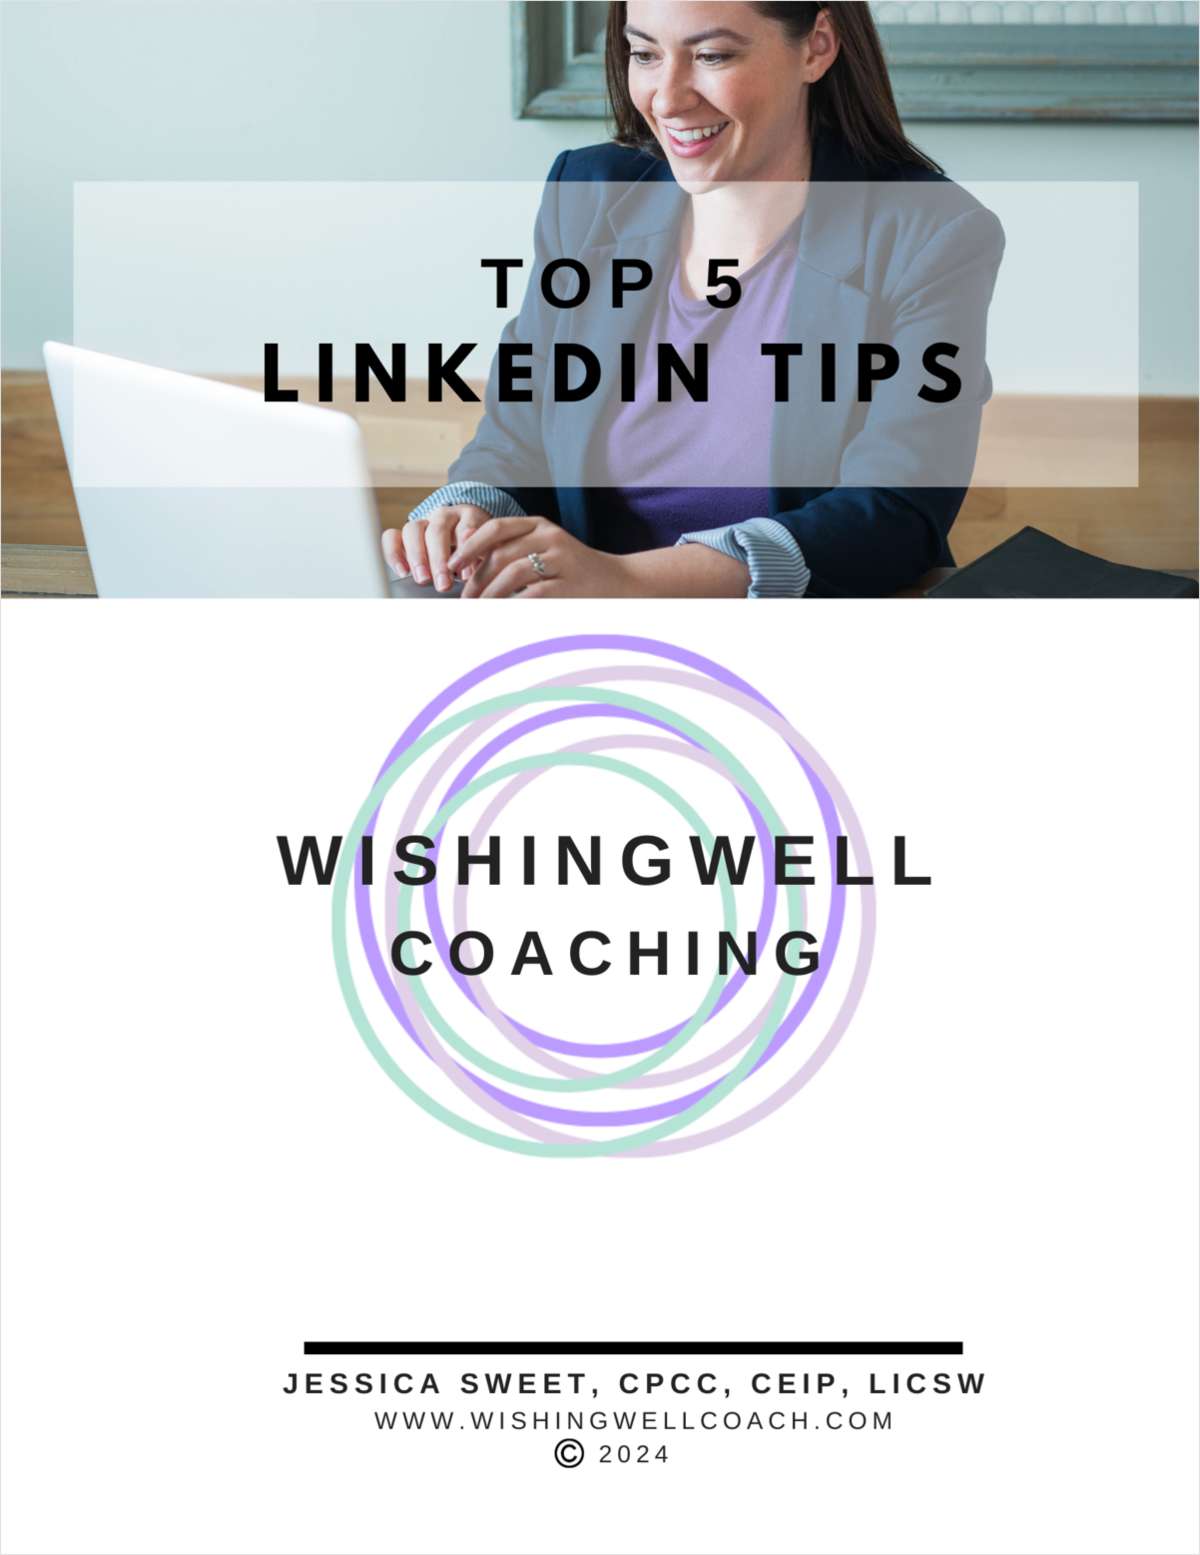 Top 5 Linkedln Tips